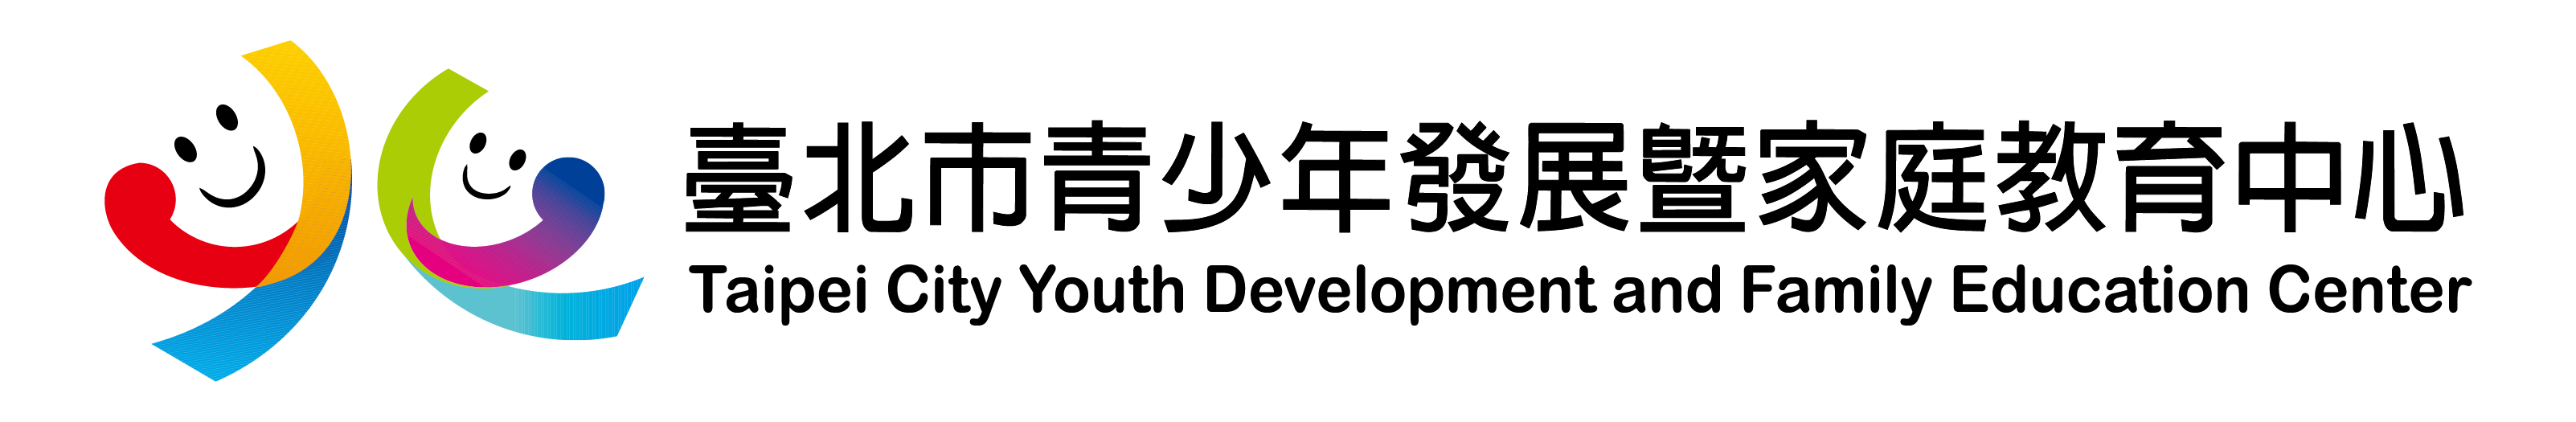 臺北市青少年發展暨家庭教育中心網路報名系統Logo